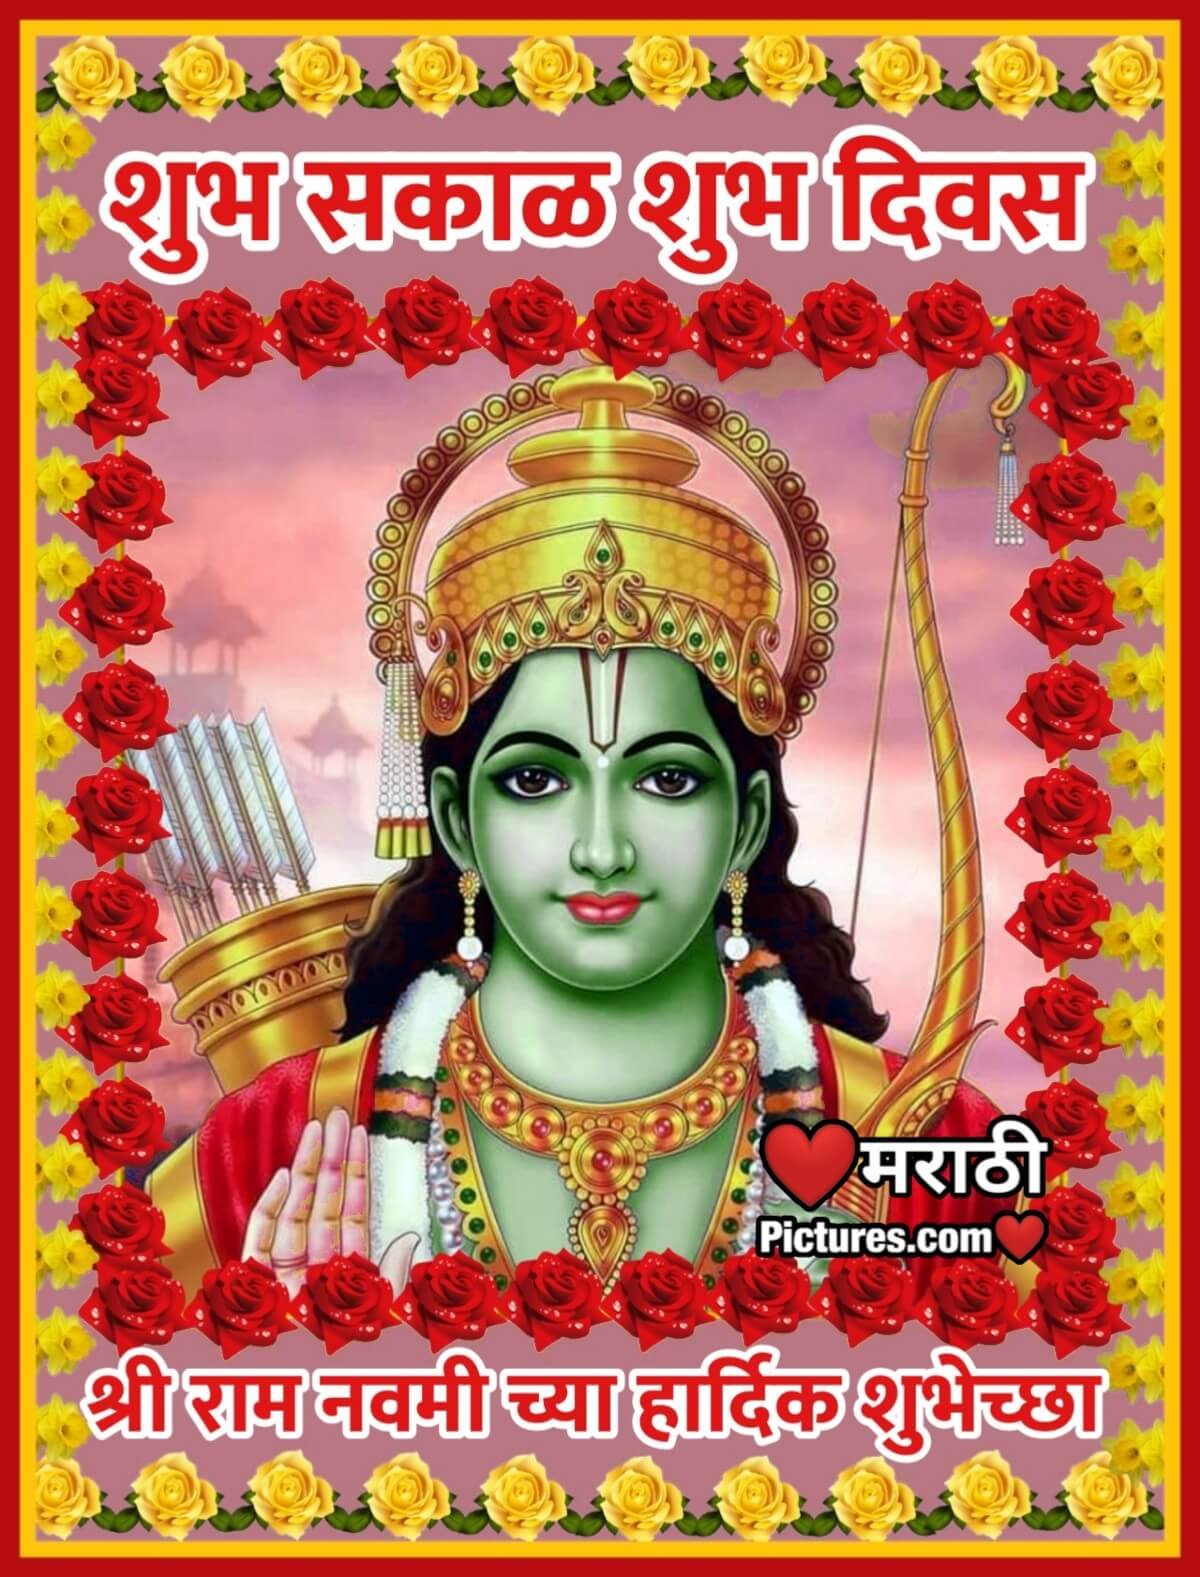 Shubh Sakal Shri Ram Navami Chya Hardik Shubhechha